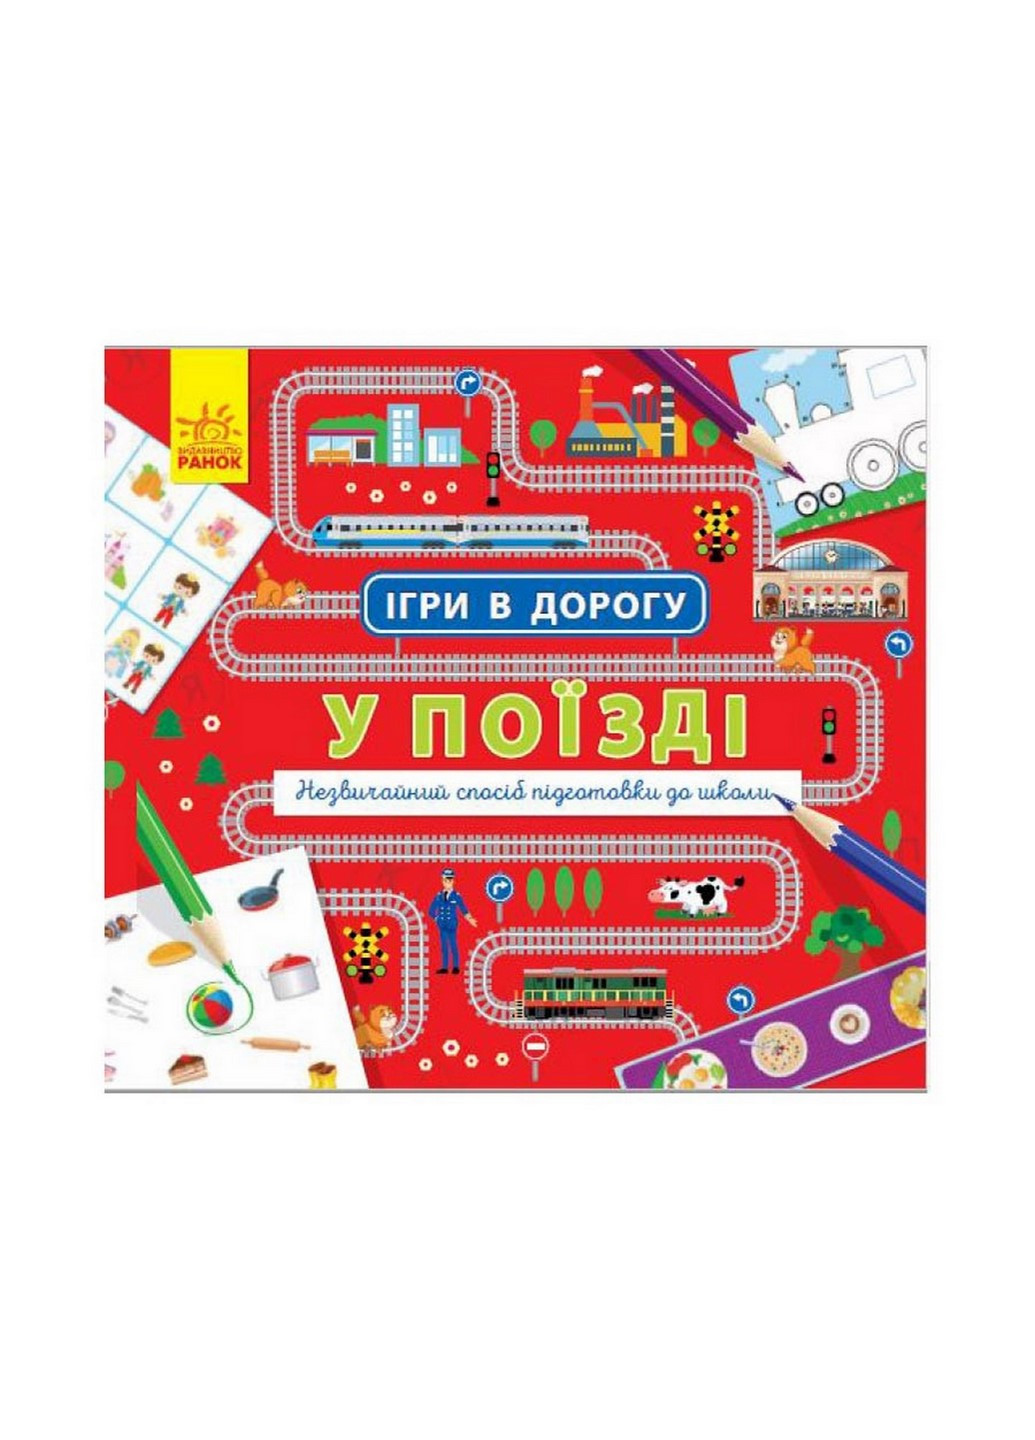 Игры в дорогу: В поезде Ранок 932006 на украинском языке Ranok Creative (260515862)